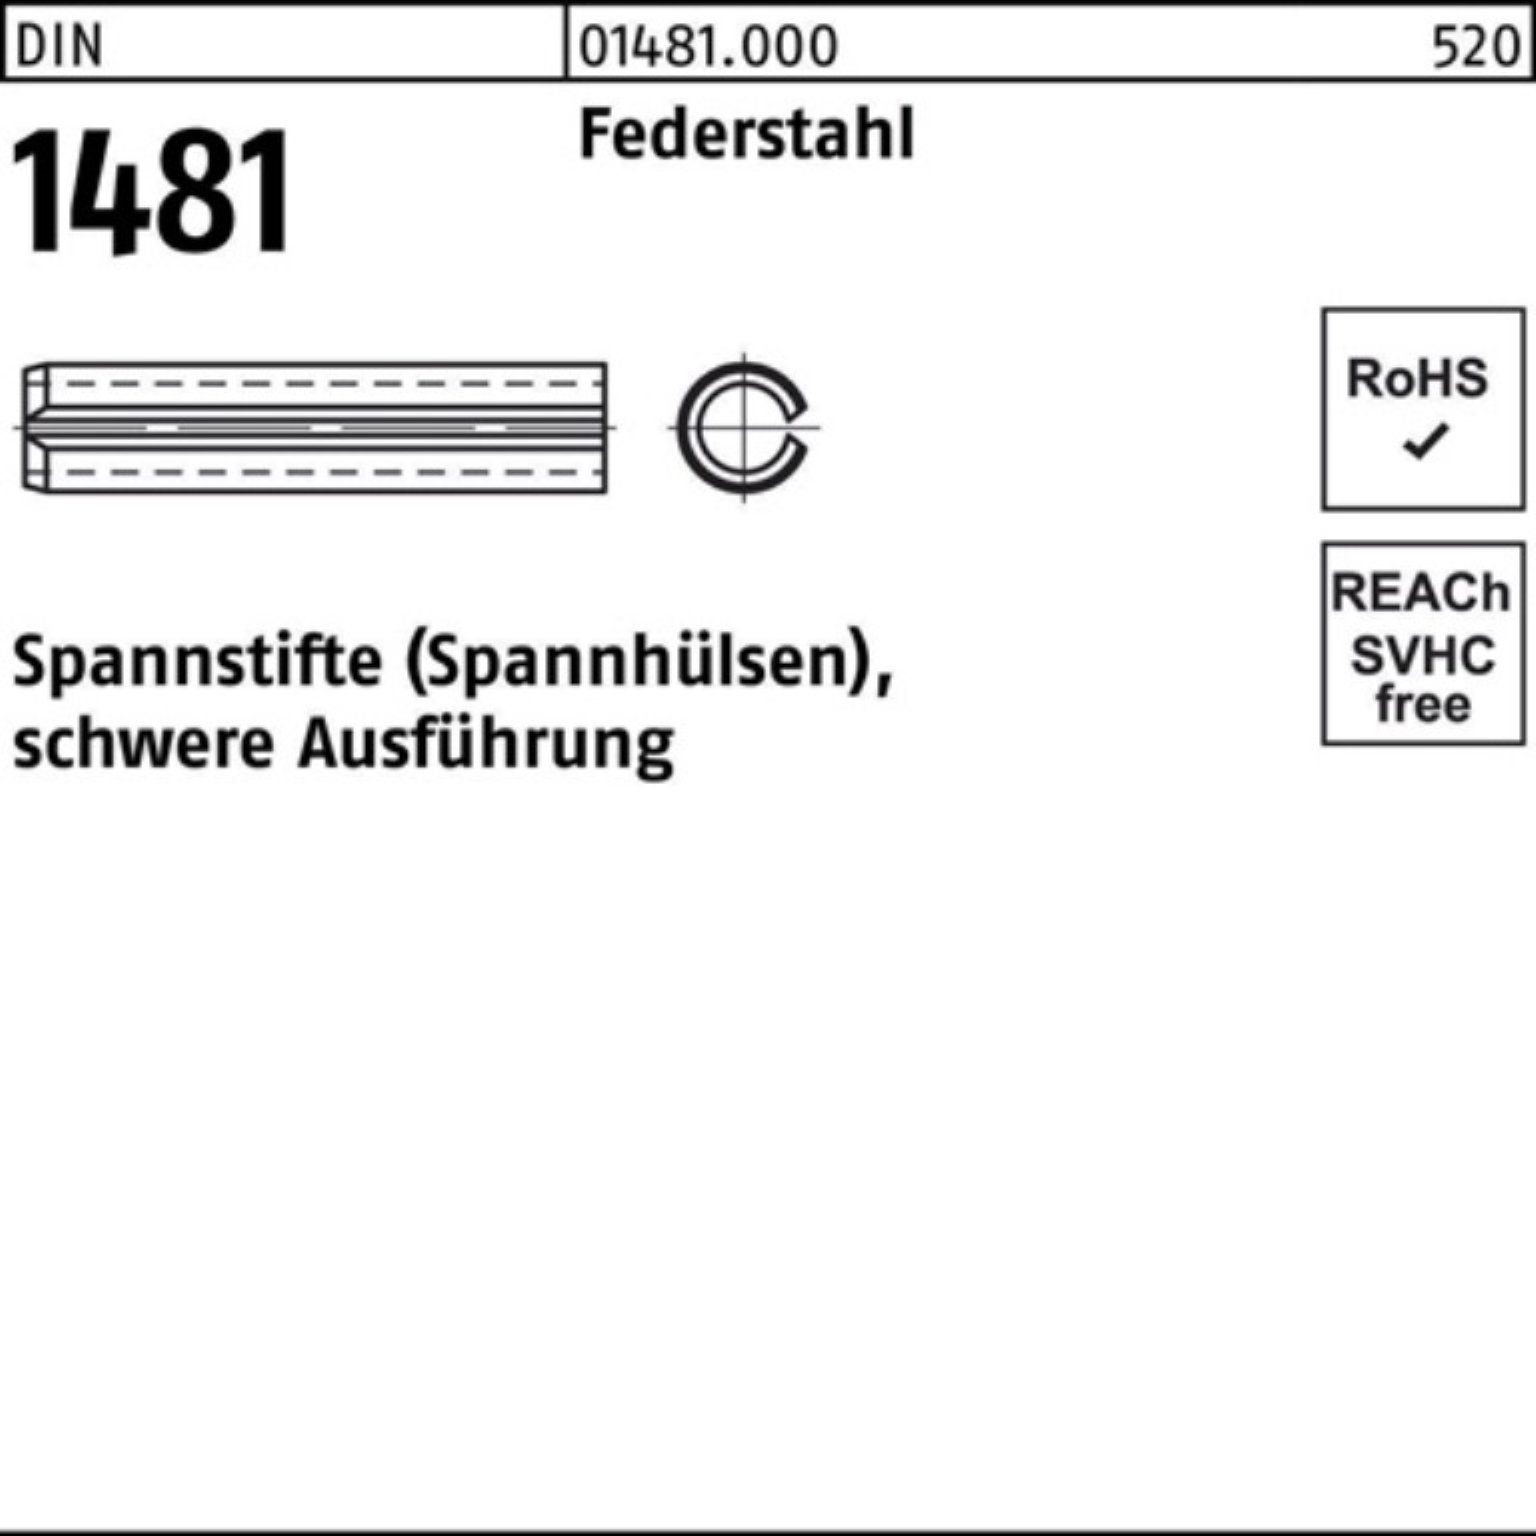 Reyher Spannstift 100er Pack Spannstift DIN 2 14x schwere 90 Ausführung Federstahl 1481